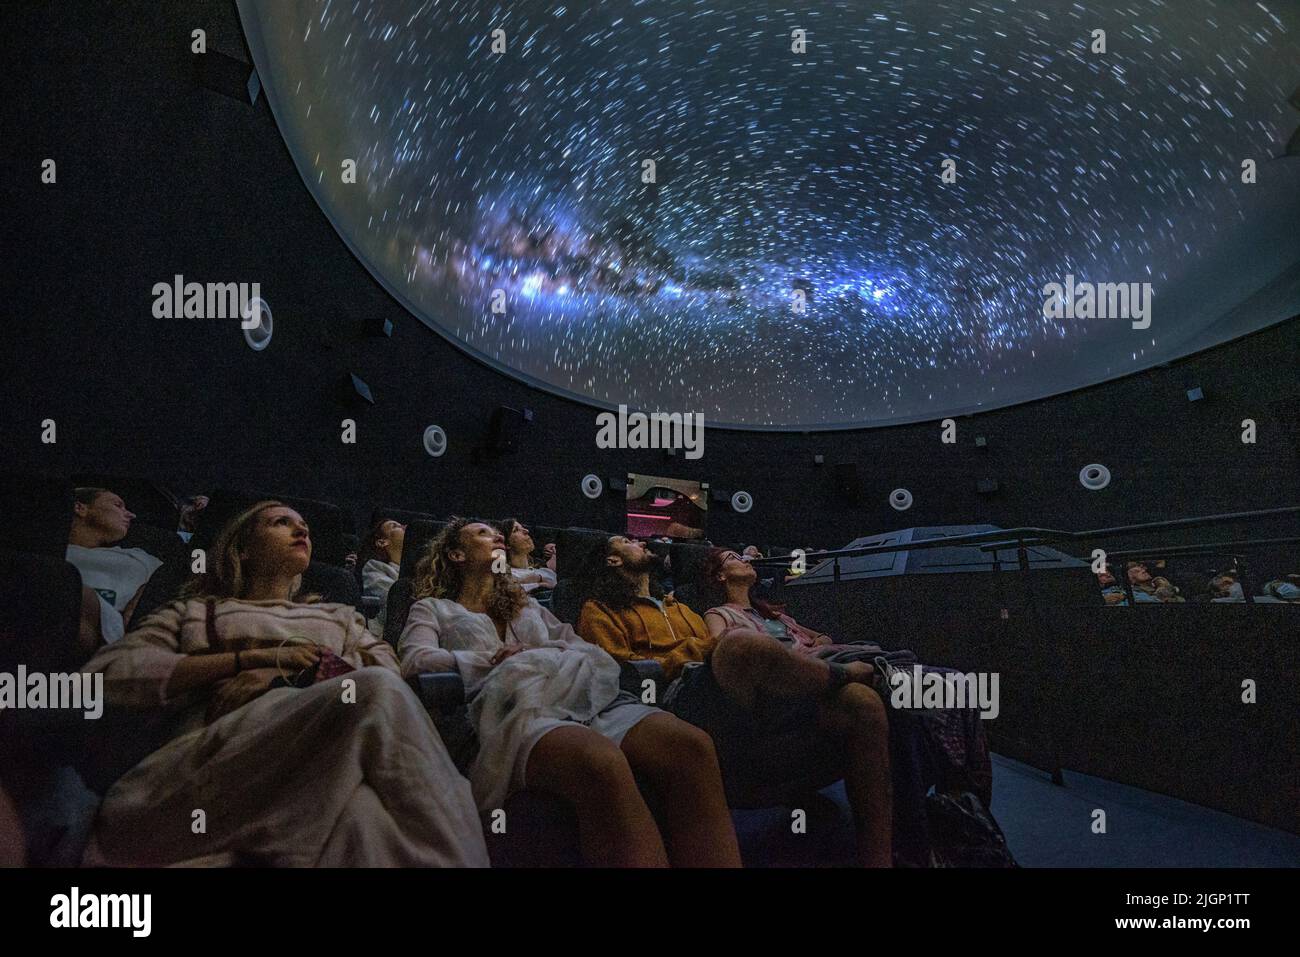 Turisti al planetario 'Ull del Montsec' durante la proiezione del video sulla notte, la Via Lattea e l'astronomia (Àger, Lleida, Spagna) Foto Stock